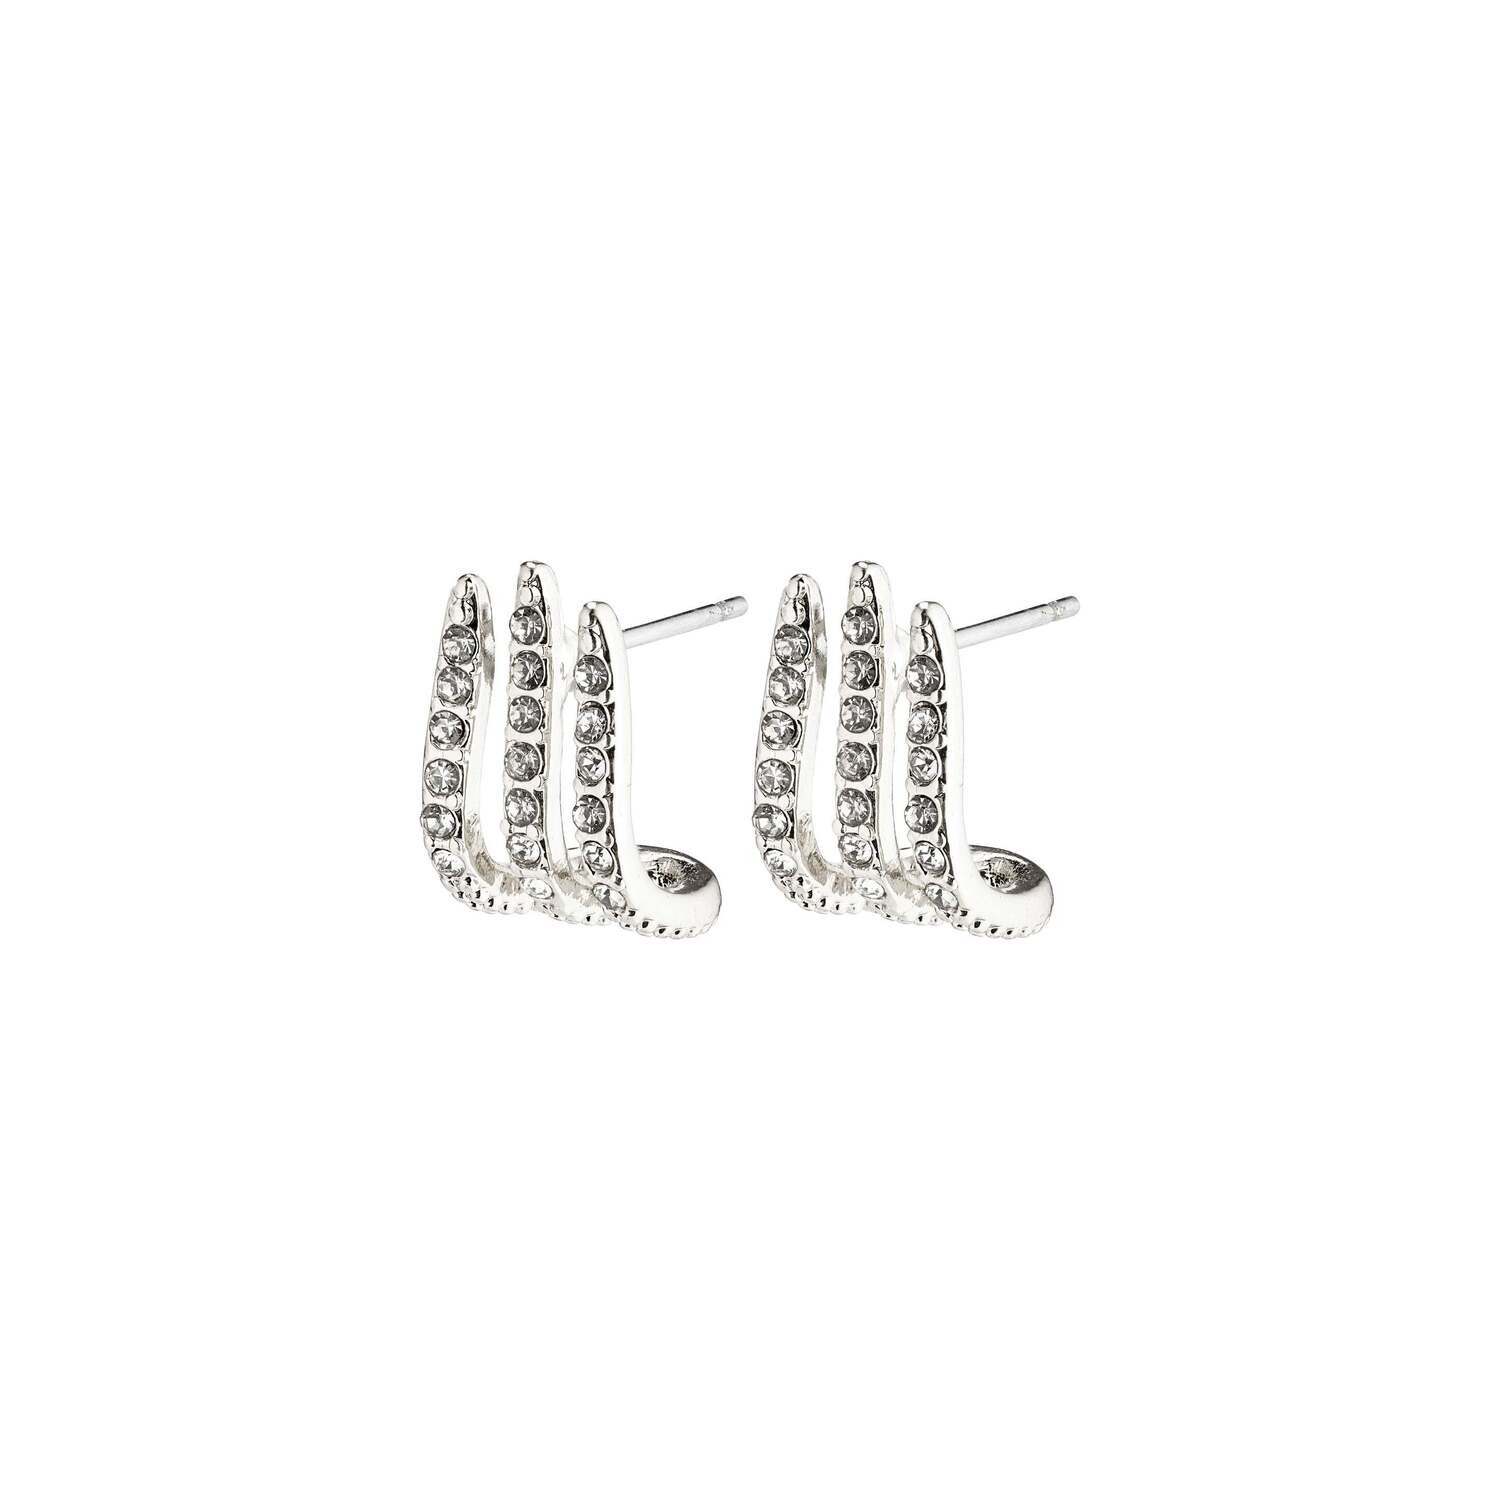 FINAL SALE Kaylee Earrings Silver Plated Crystal